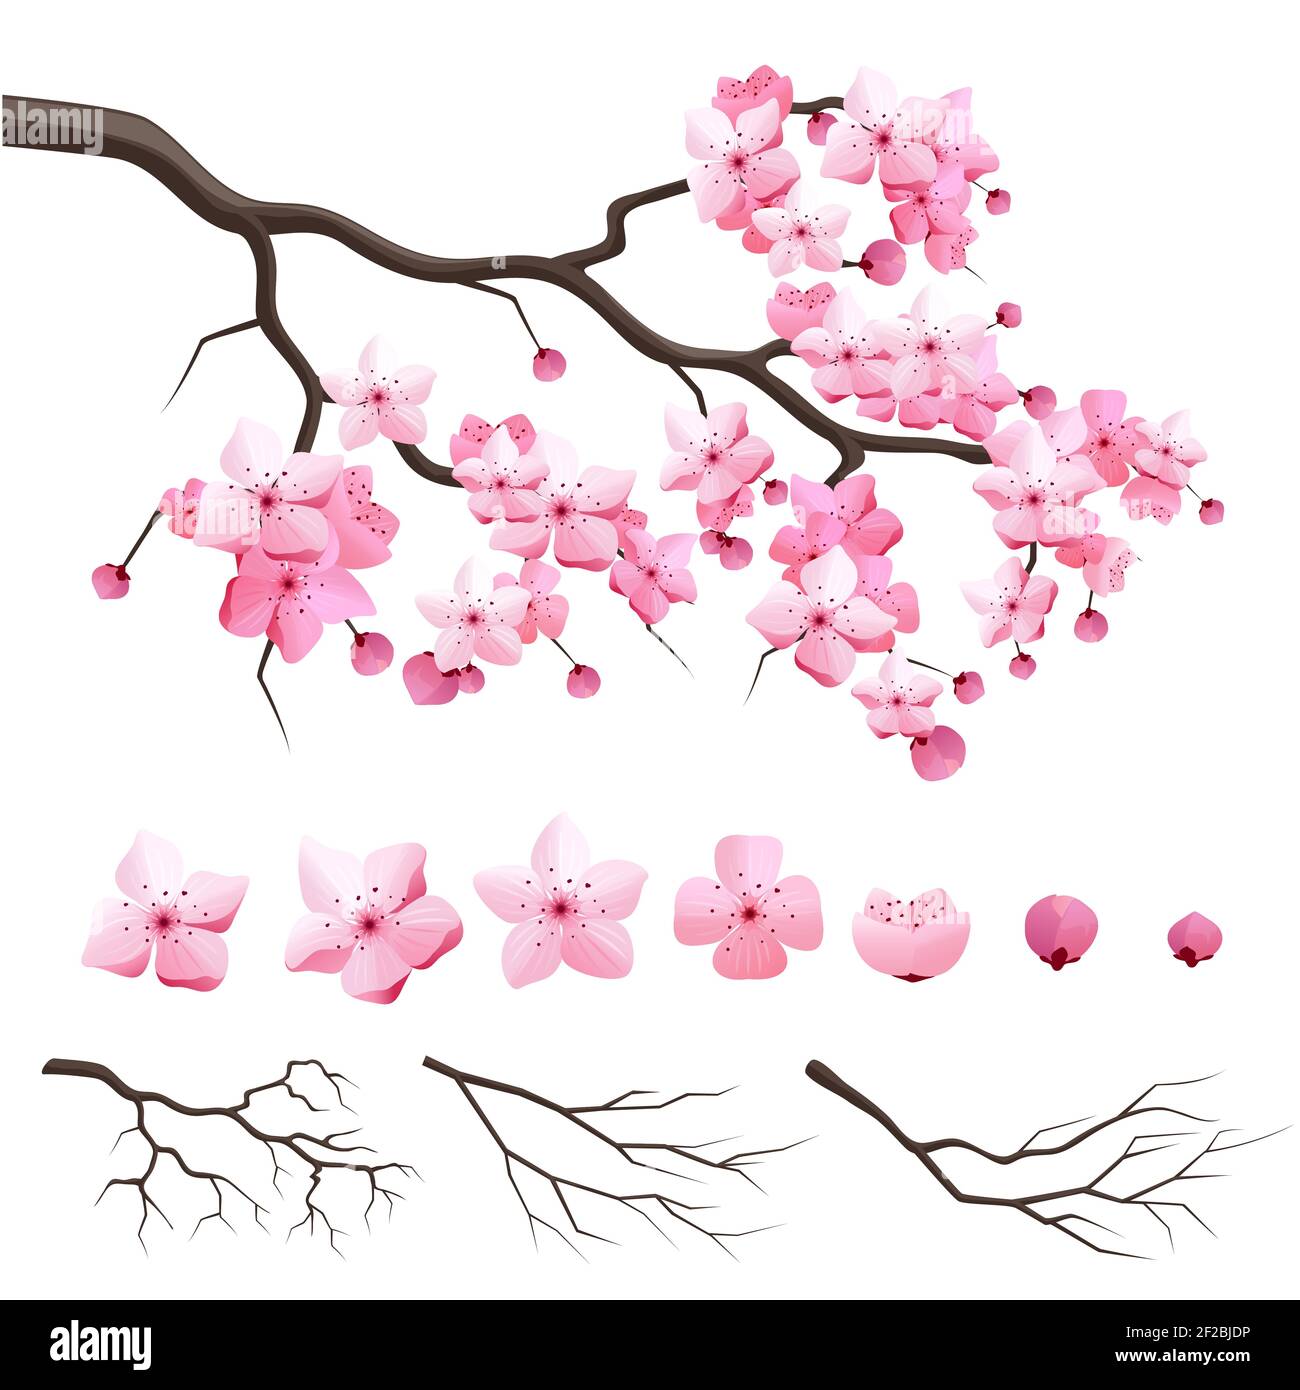 Vector japan sakura branche de cerise avec fleurs en fleurs. Constructeur de conception avec branche de cerisier en fleur Illustration de Vecteur